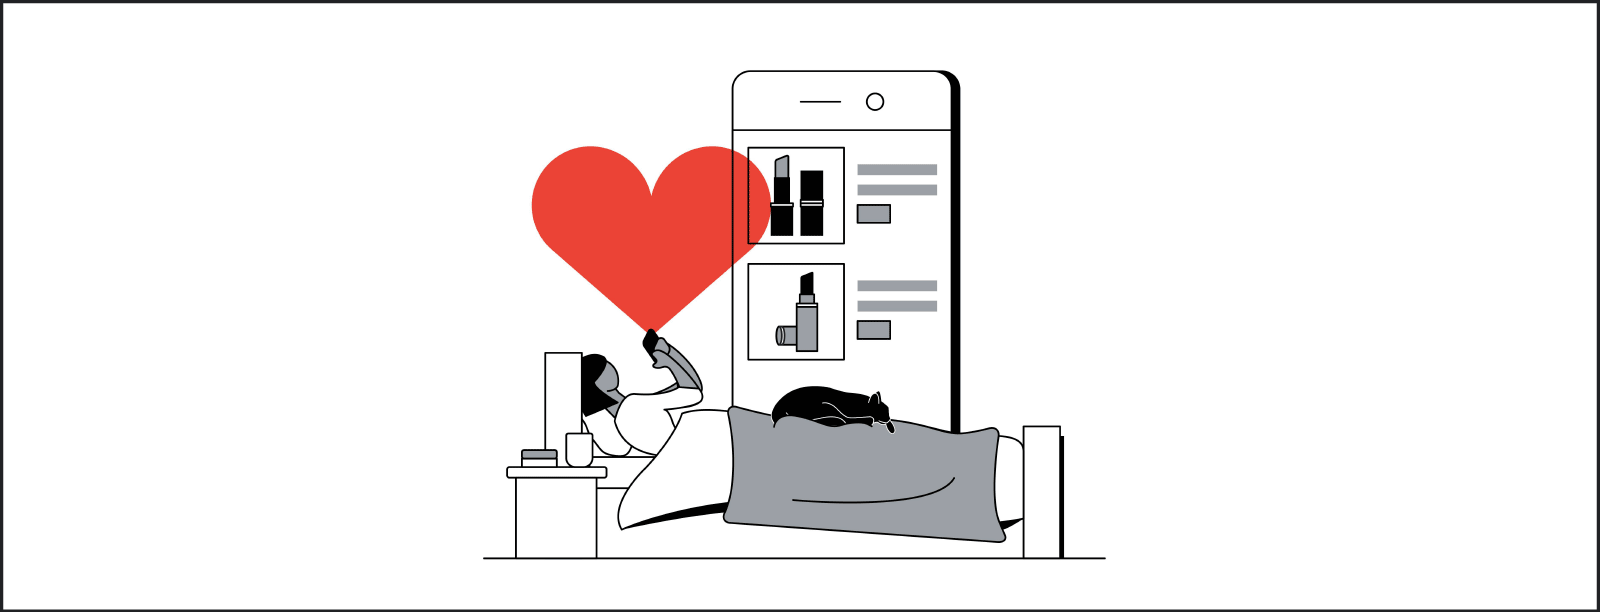 Un'illustrazione stilizzata di una persona che naviga utilizzando il telefono dal letto con un gatto nero raggomitolato ai suoi piedi e un cuore rosso al di sopra. Sullo sfondo si vede lo schermo di uno smartphone che mostra i prodotti.